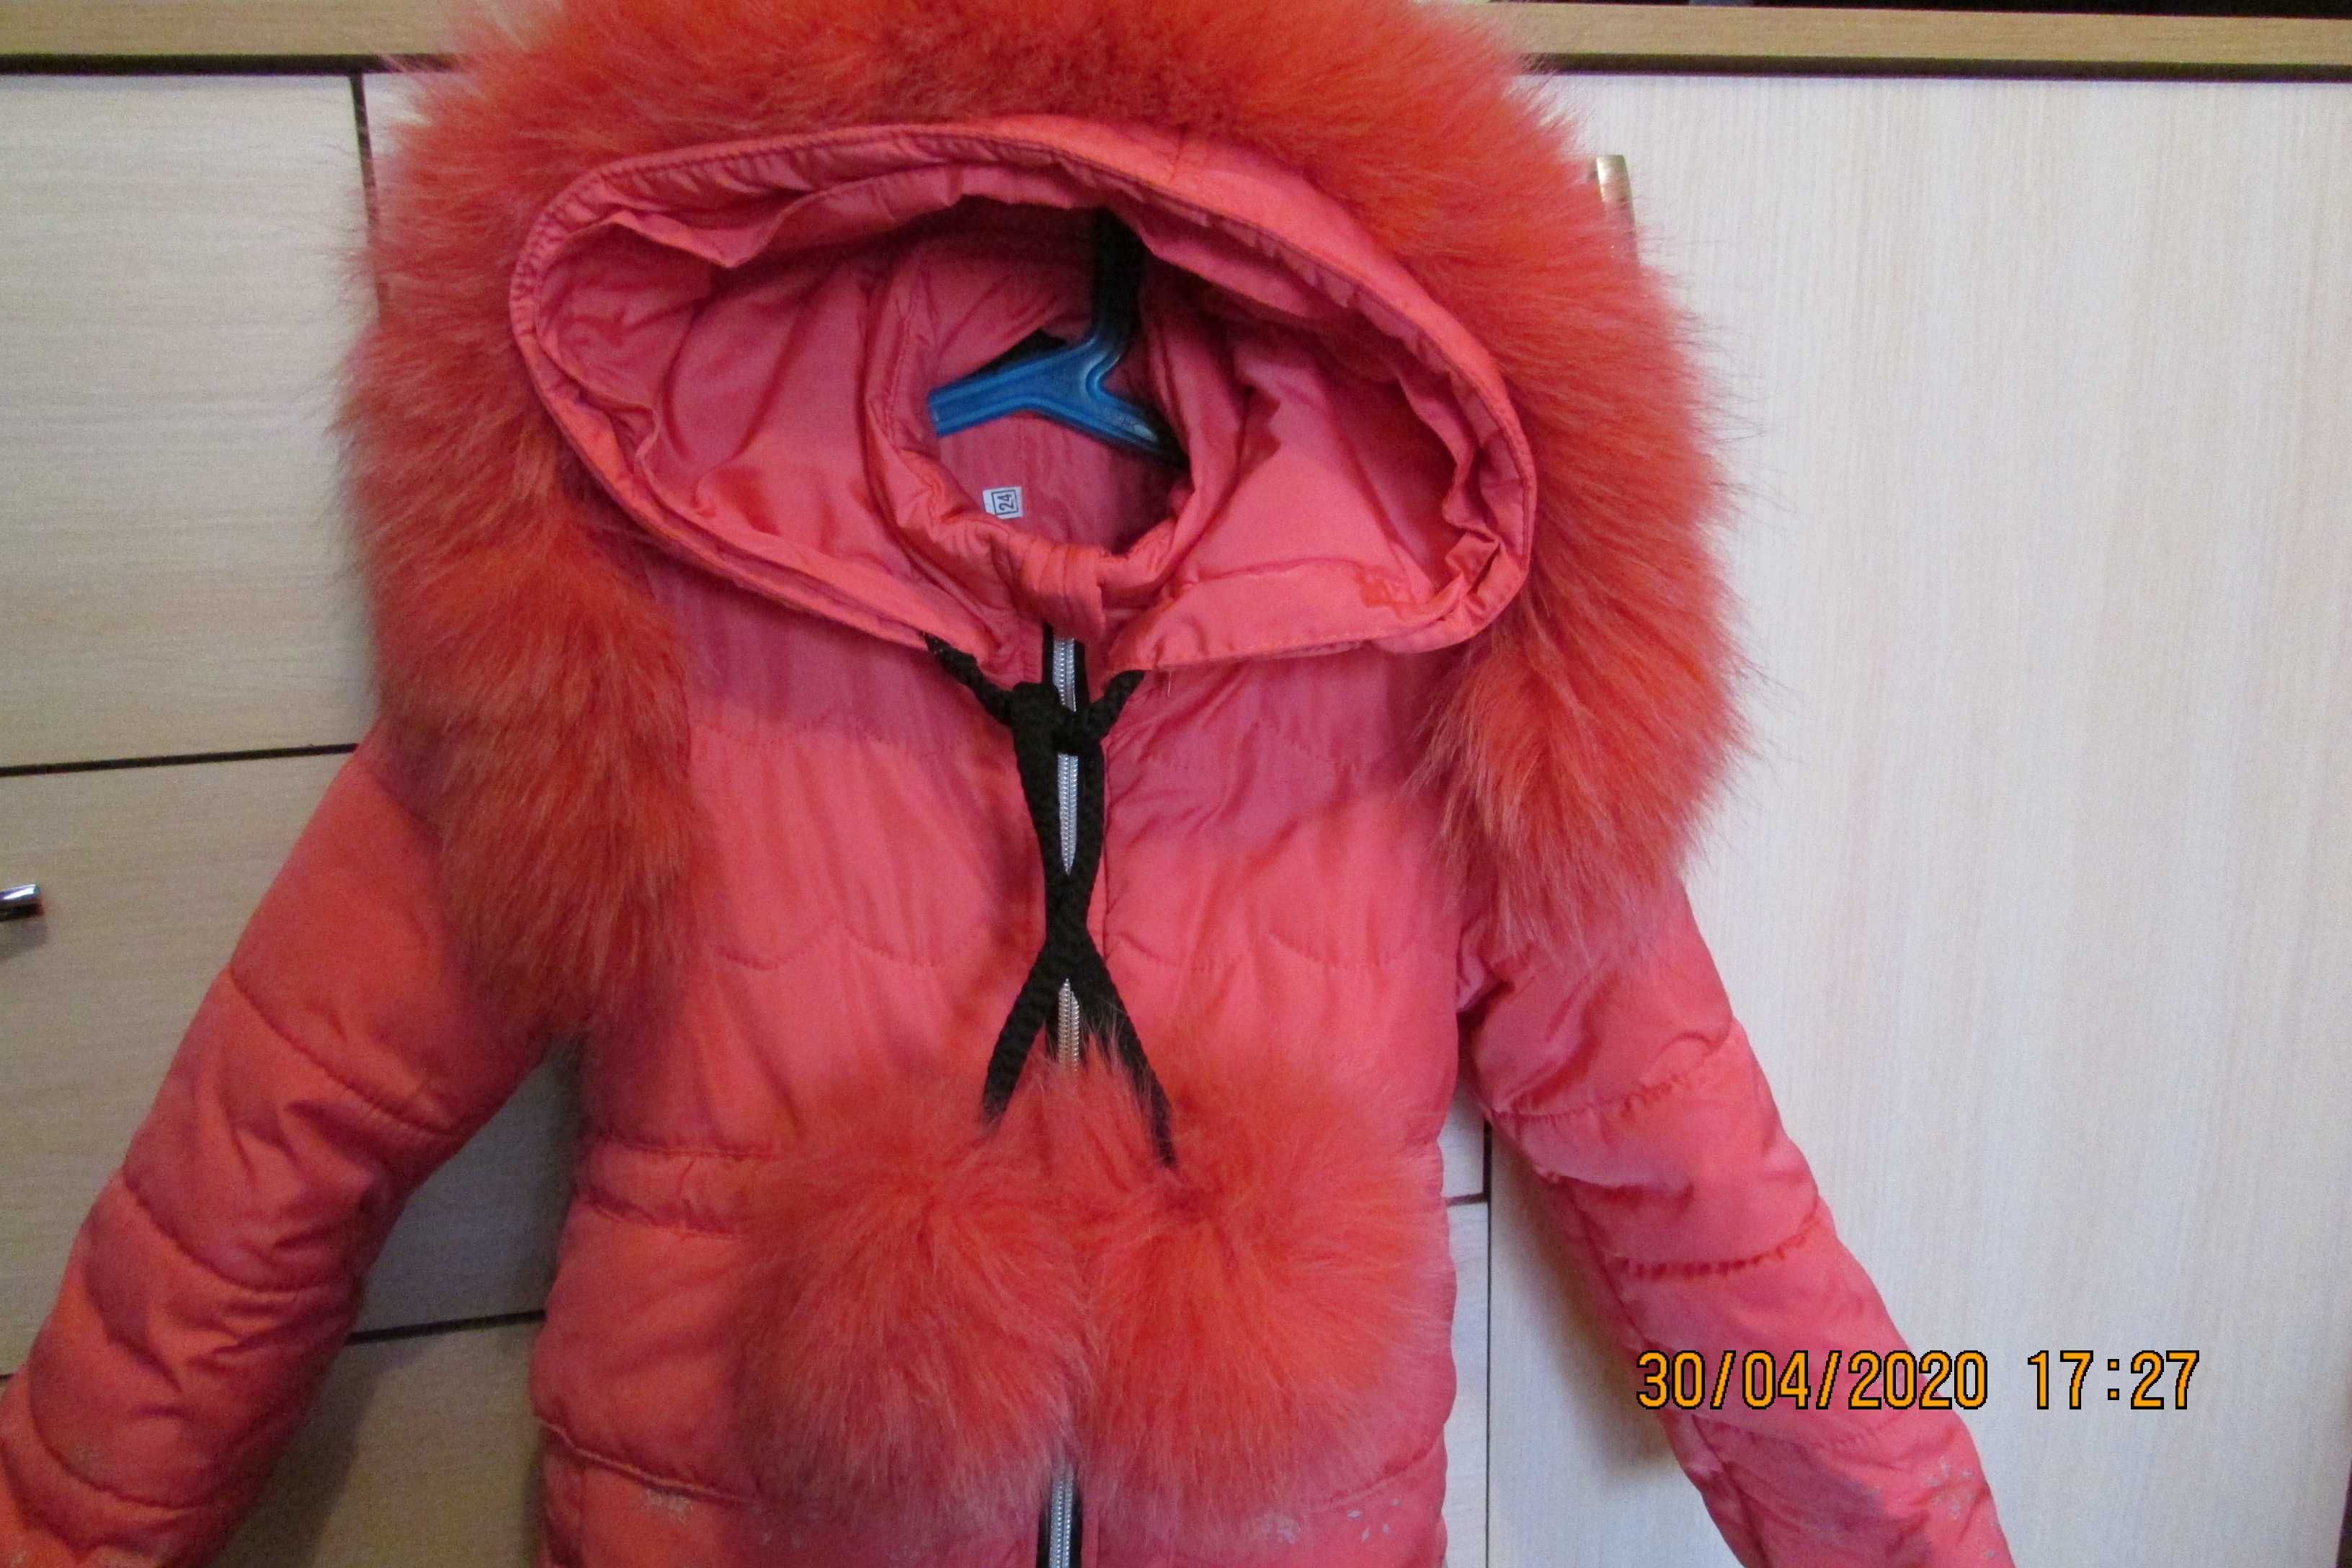 Зимнее пальто для девочки